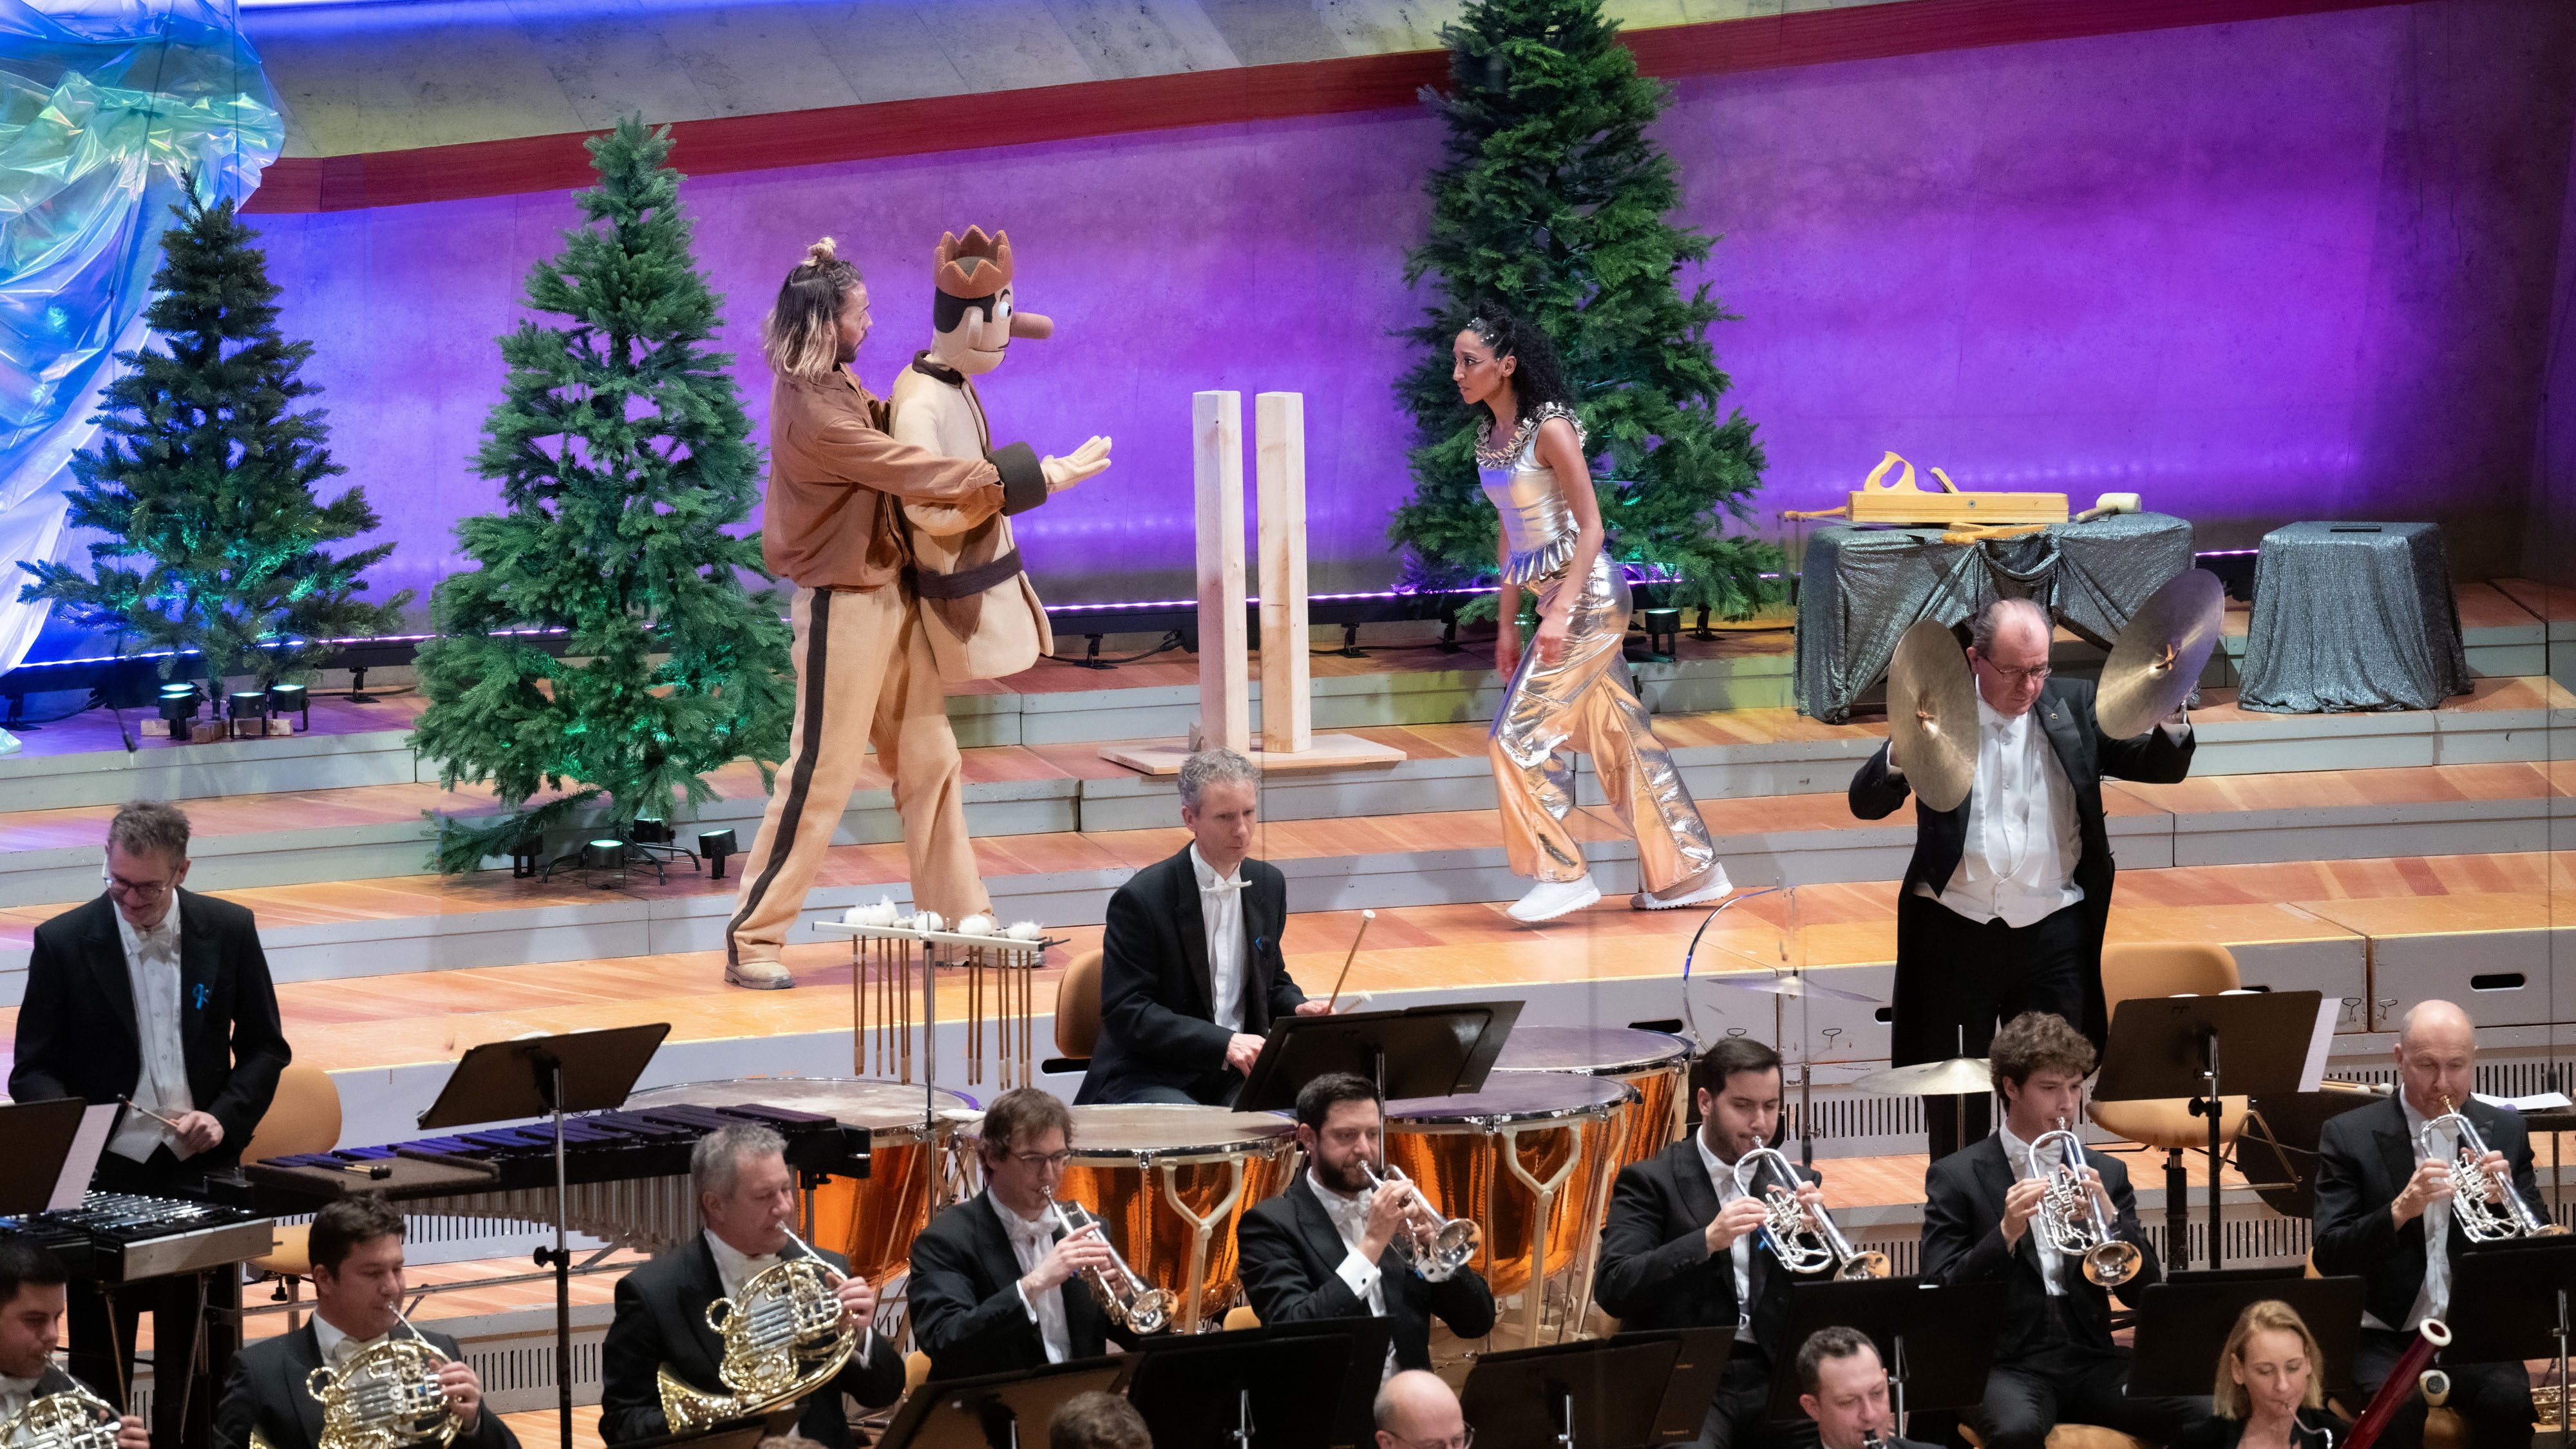 Vorne ist ein Teil des Orchesters auf der Bühne zu sehen, hinten geht ein Mann mit einer großen Prinzenpuppe auf eine verkleidete Frau zu